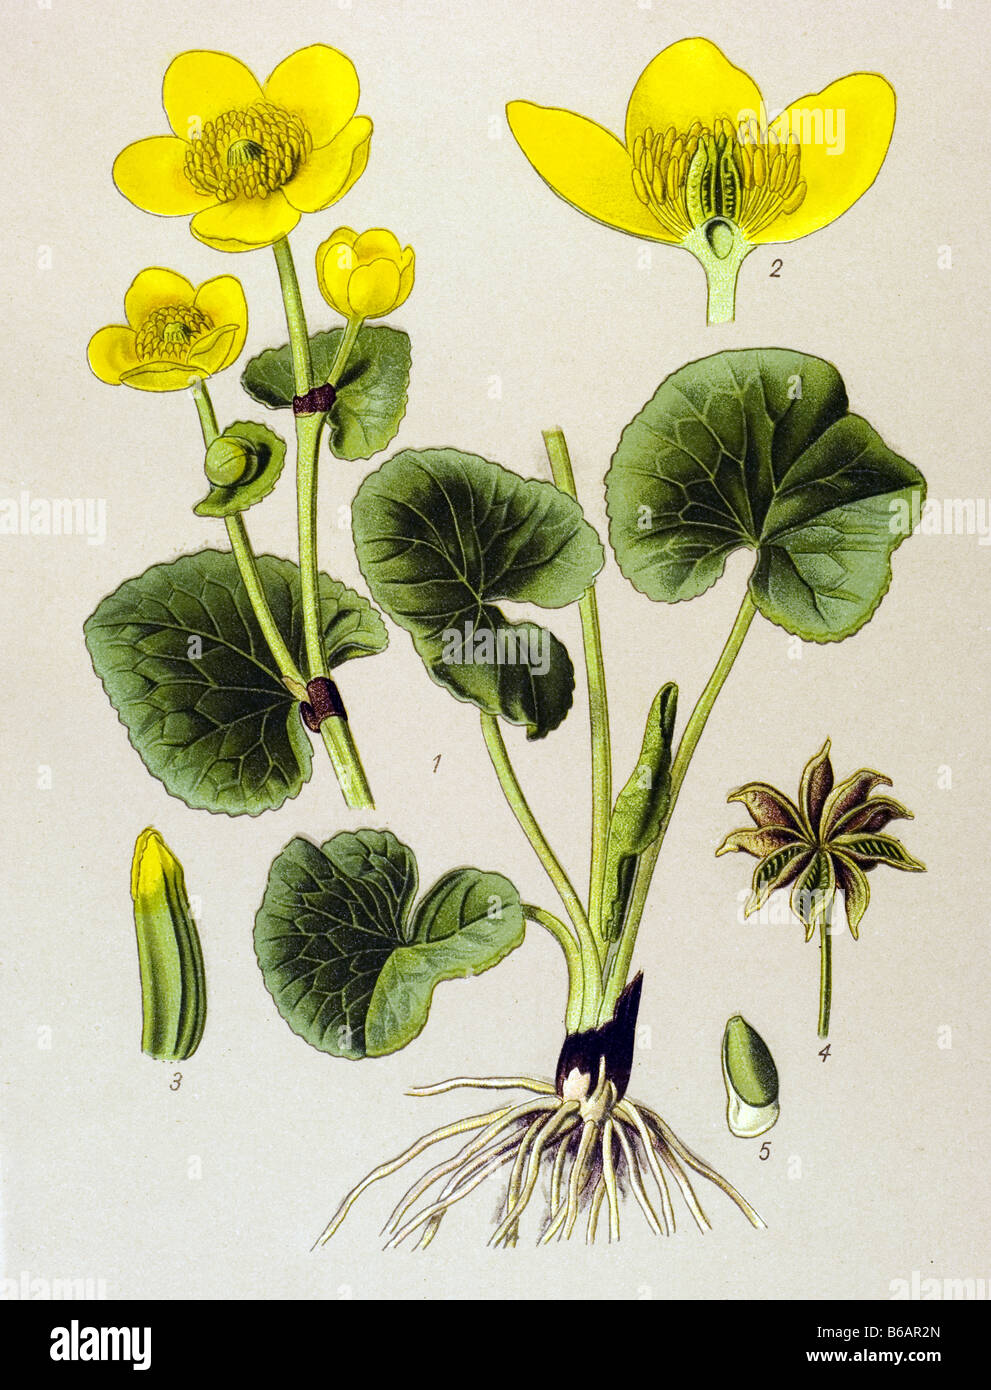 Kingcup, Caltha palustris, poisonous plants illustrations Stock Photo